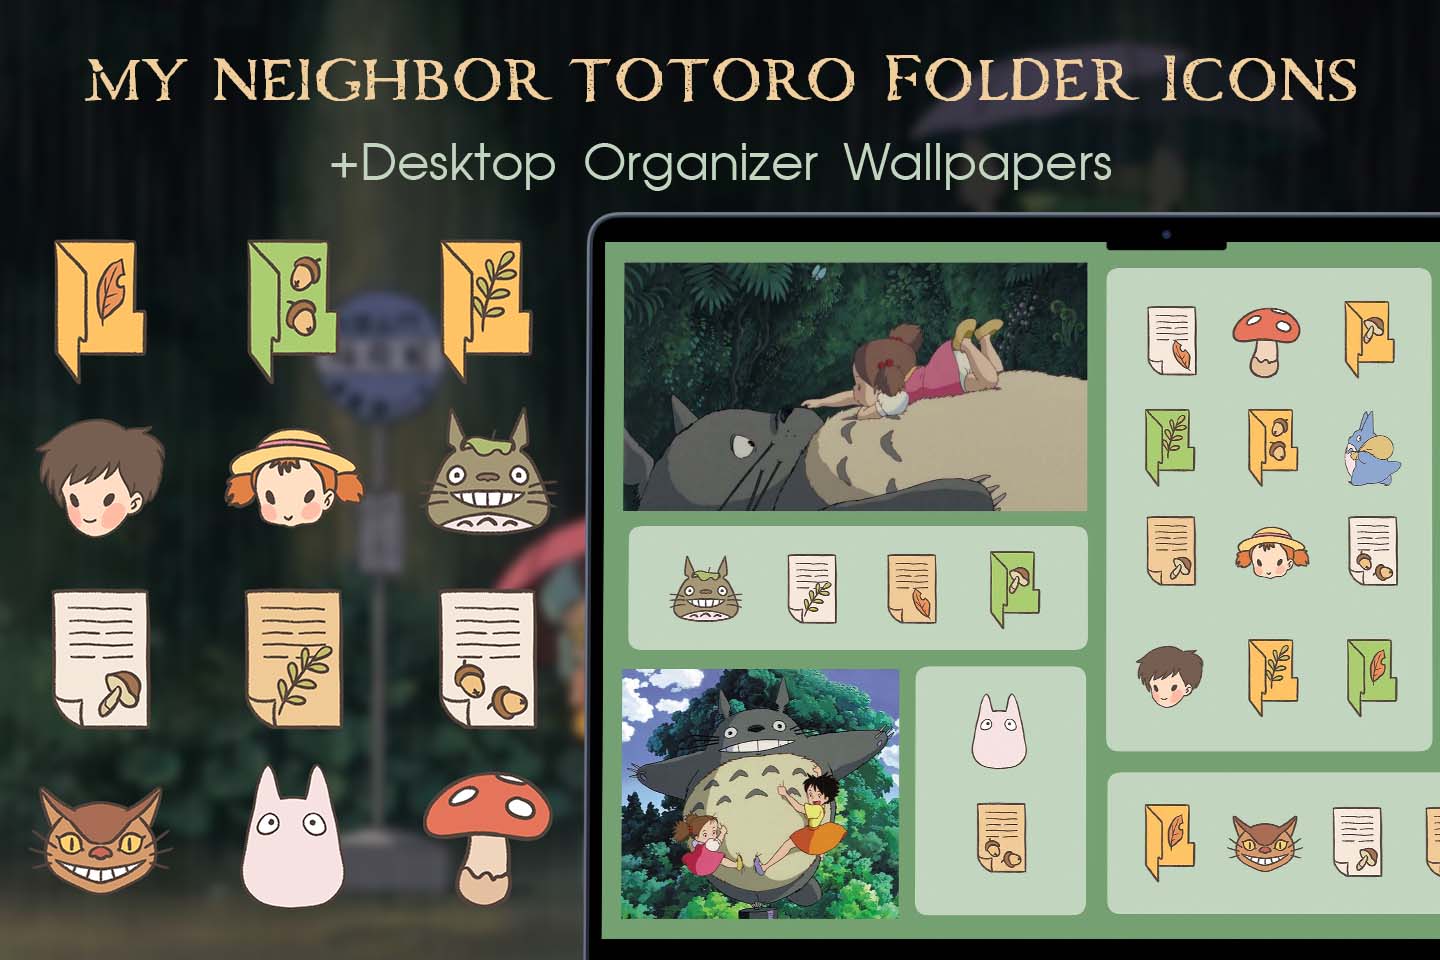 Paquete de iconos de la carpeta My Neighbor Totoro